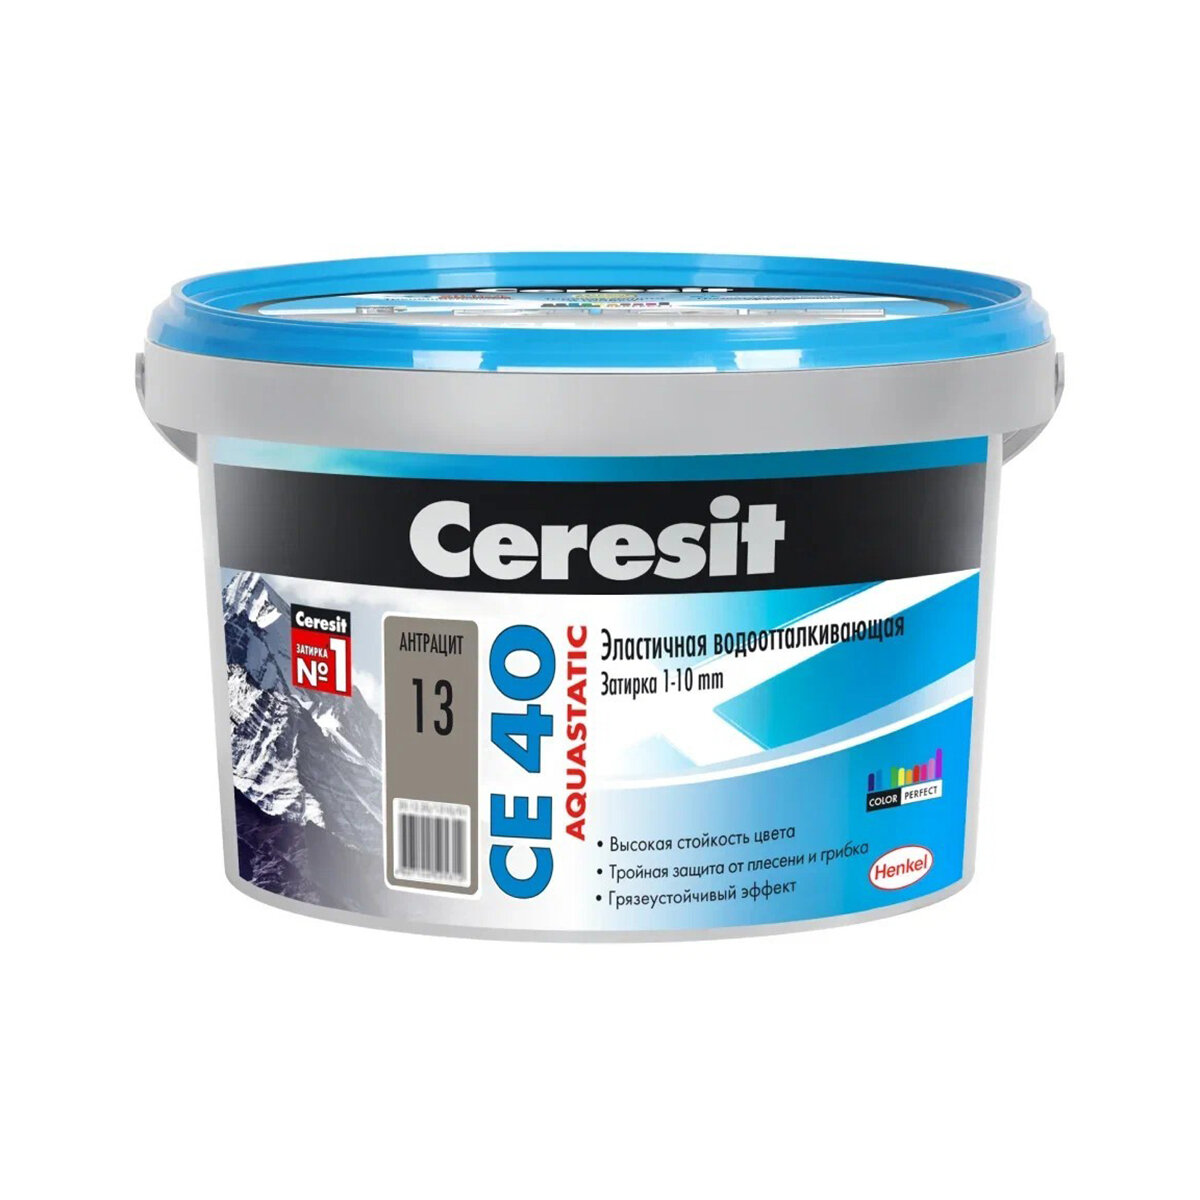 Затирка Ceresit CE 40 Aquastatic №13, антрацит, 2 кг